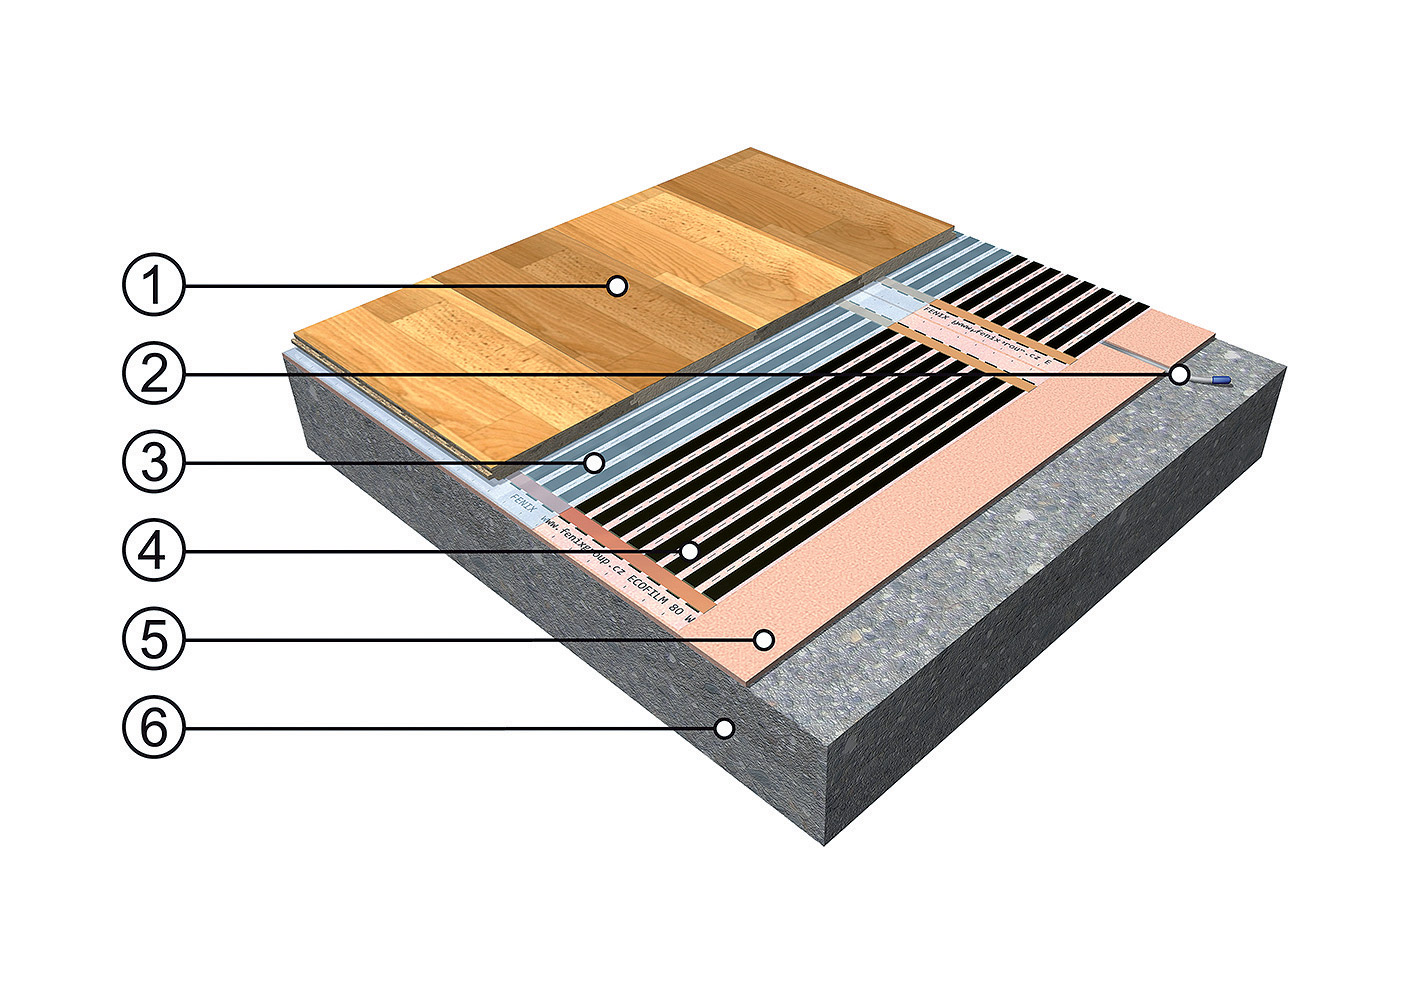 Skladba podlahových vrstiev pri plávajúcej podlahe 1 – drevená alebo laminátová plávajúca podlaha, 2 – podlahová sonda v drážke, 3 – krycia PE fólia, hr. 0,25mm, 4 – podlahová vykurovacia fólia ECOFILM, 5 – izolačná podložka z extrudovaného polystyrénu, 6 – podklad – pôvodná podlaha, betón, anhydrit a pod.